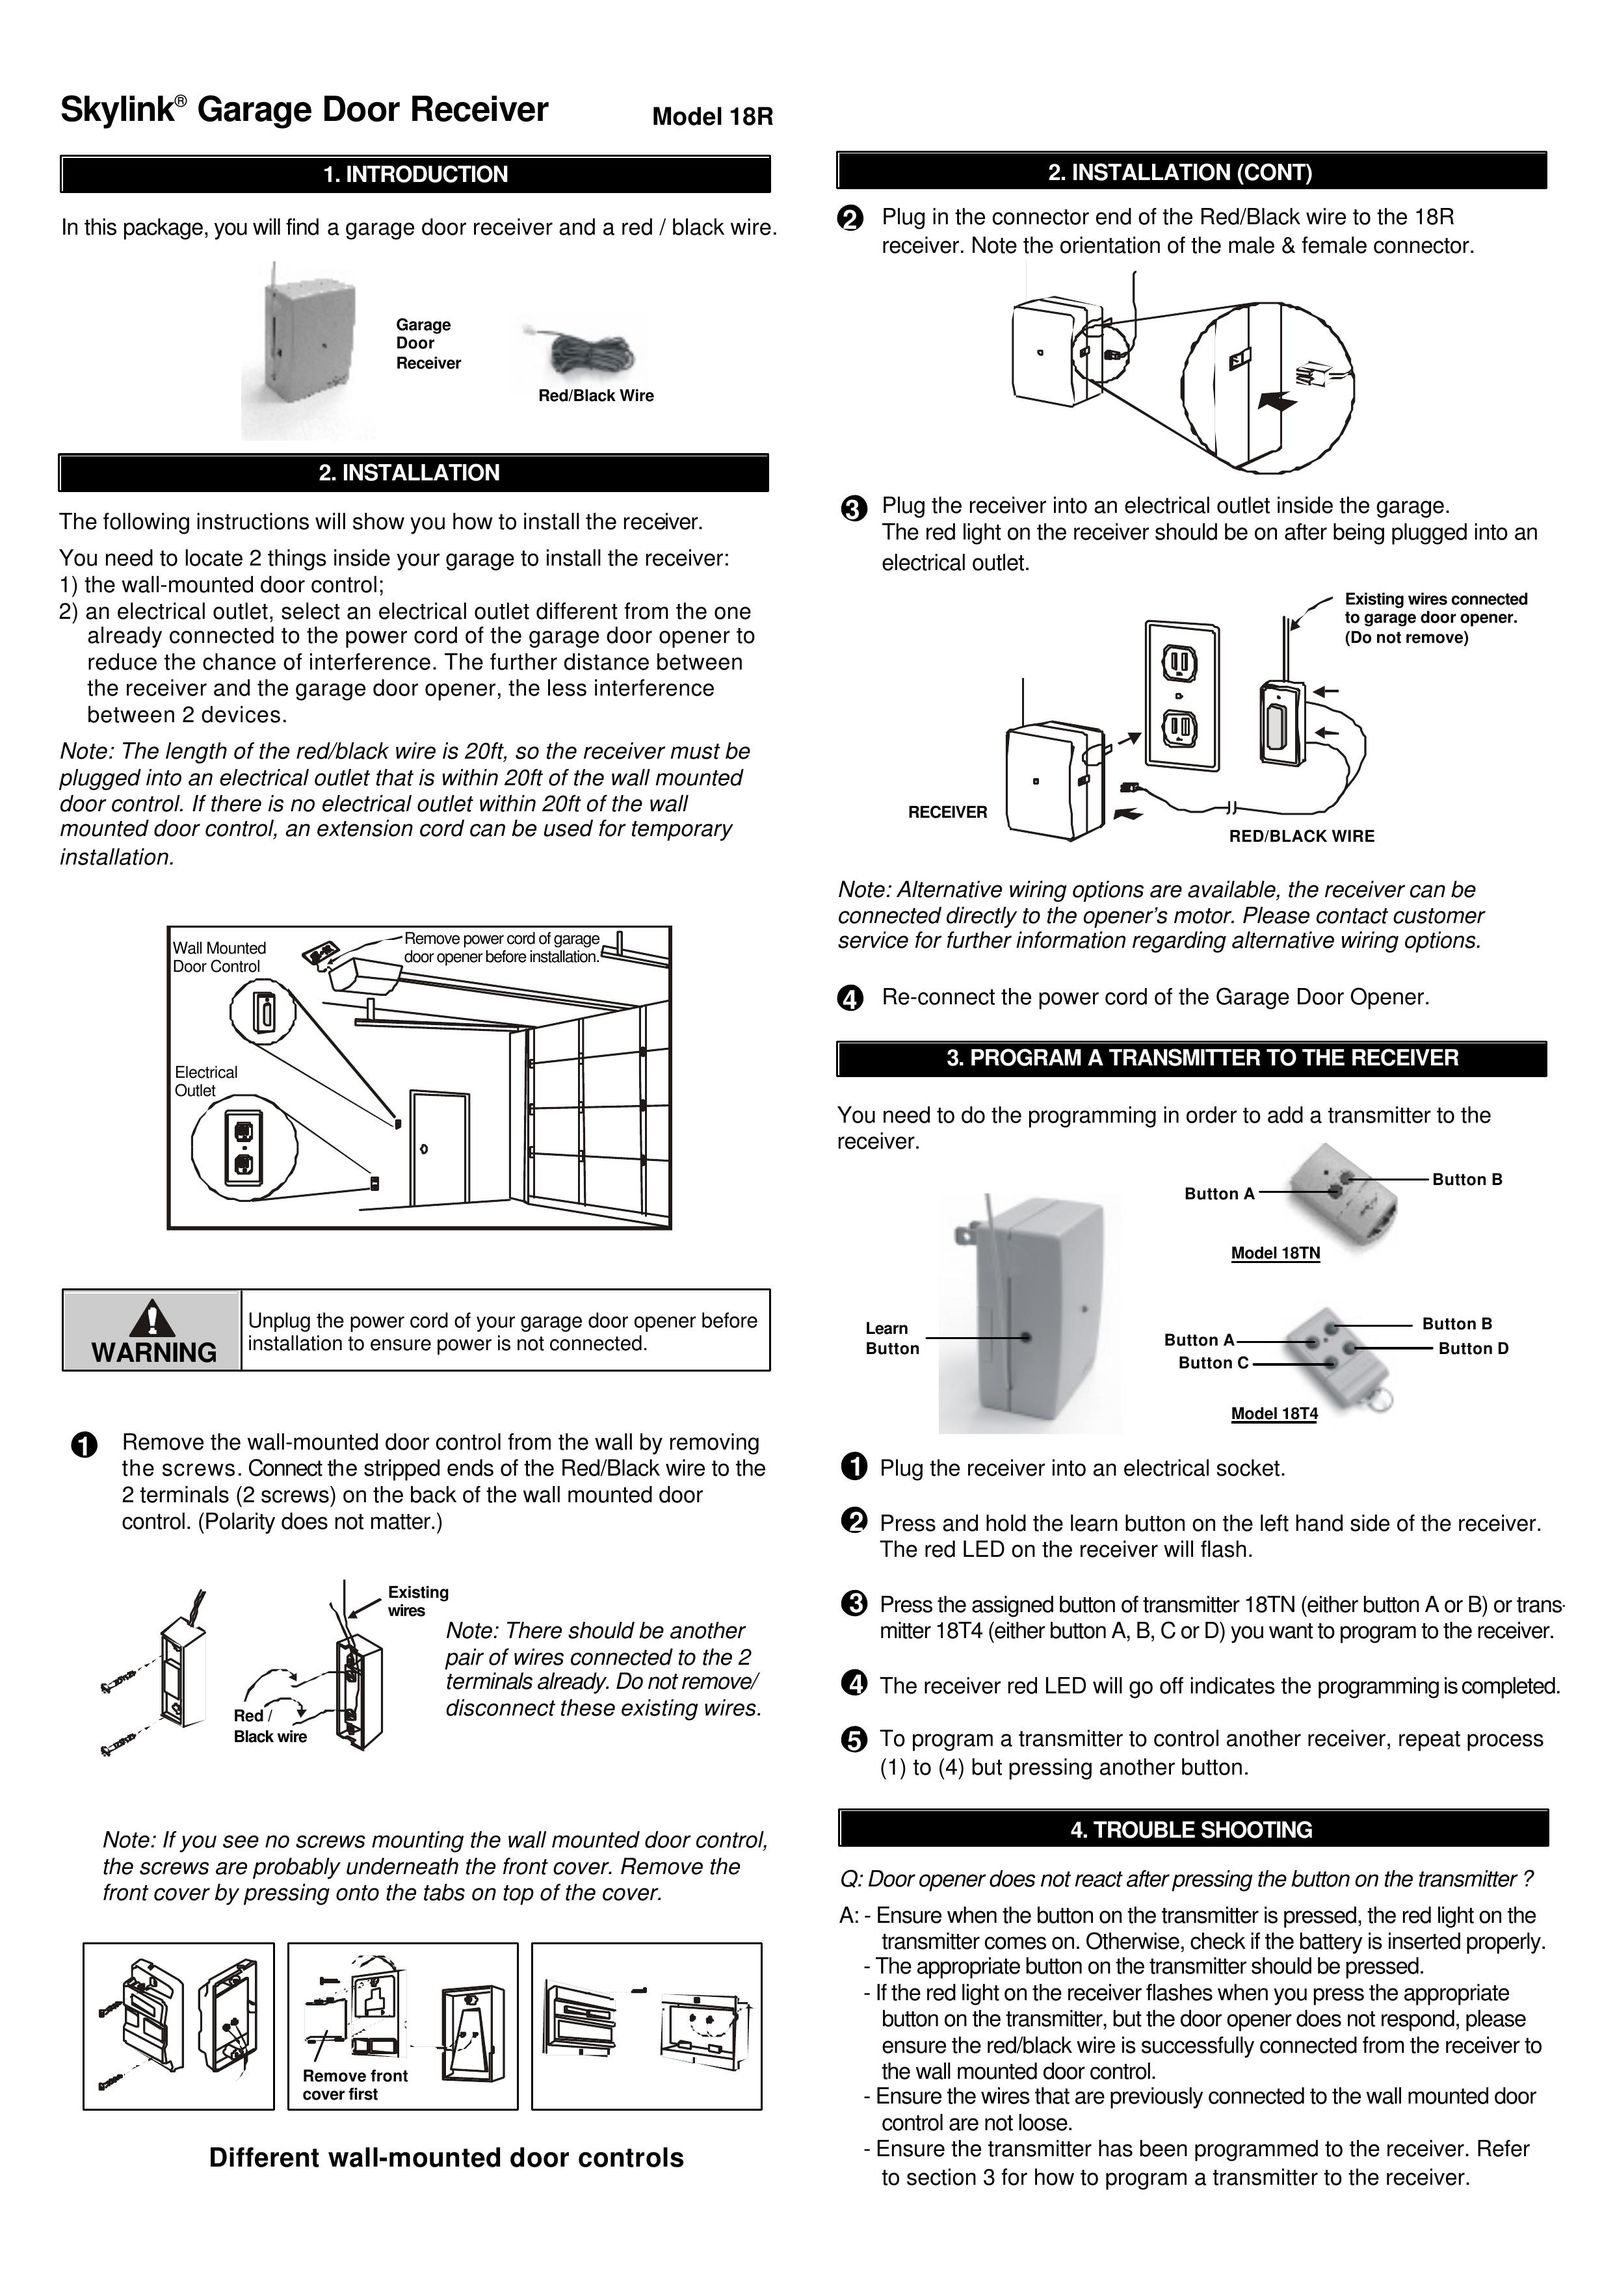 SkyLink 18R Garage Door Opener User Manual